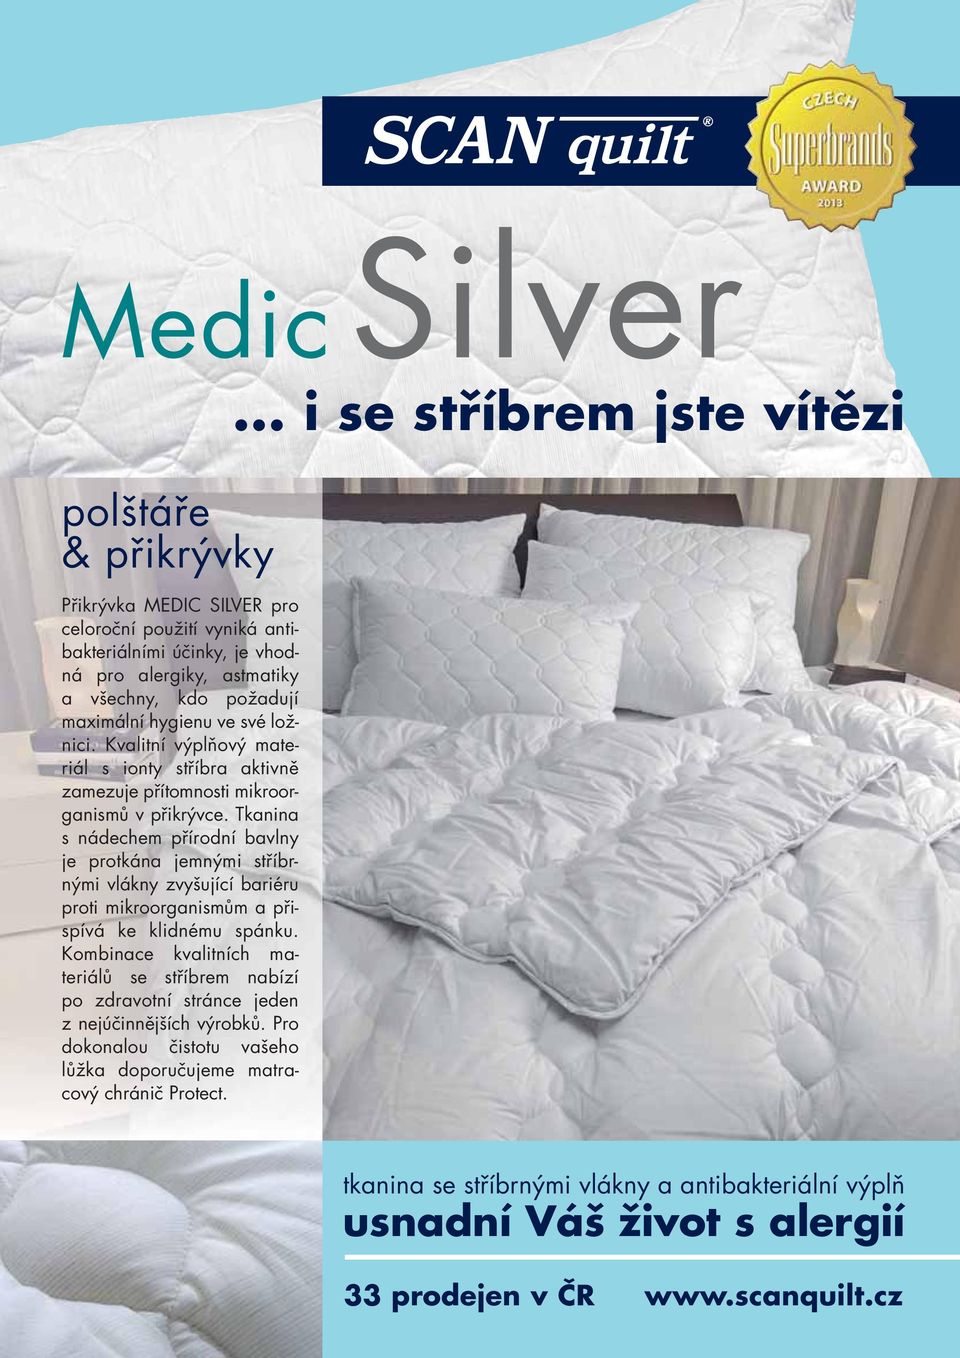 Tkanina s nádechem přírodní bavlny je protkána jemnými stříbrnými vlákny zvyšující bariéru proti mikroorganismům a přispívá ke klidnému spánku.